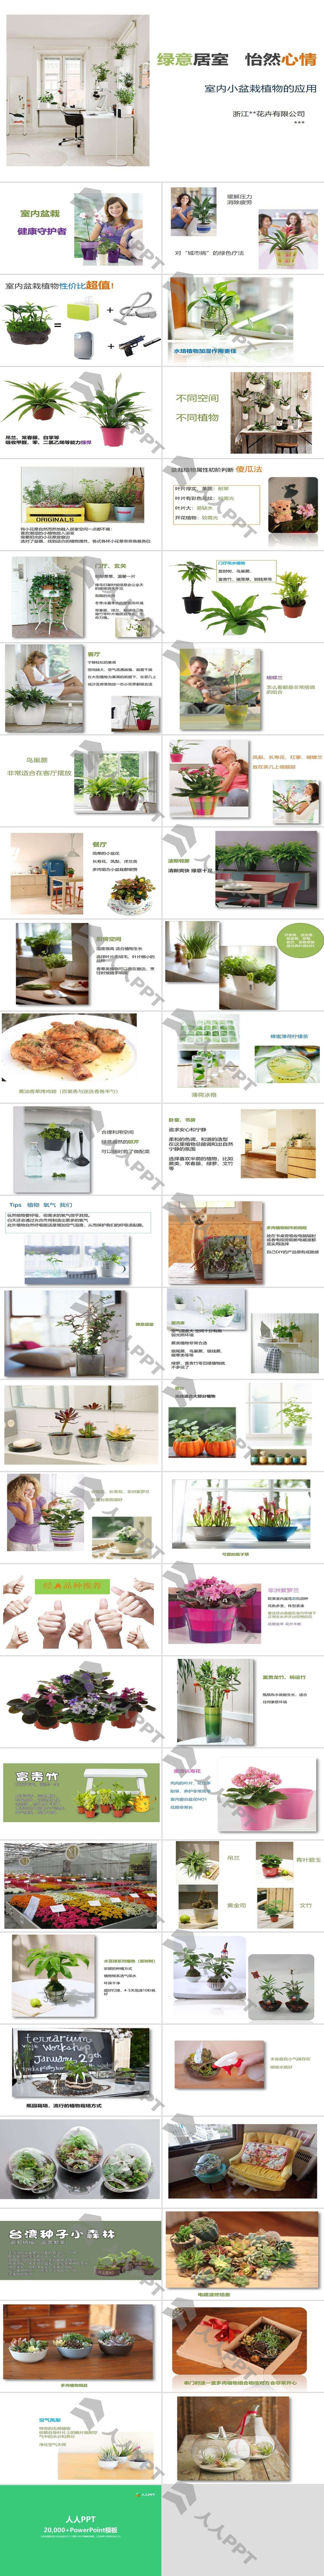 室内小盆栽植物的应用与介绍PPT模板长图